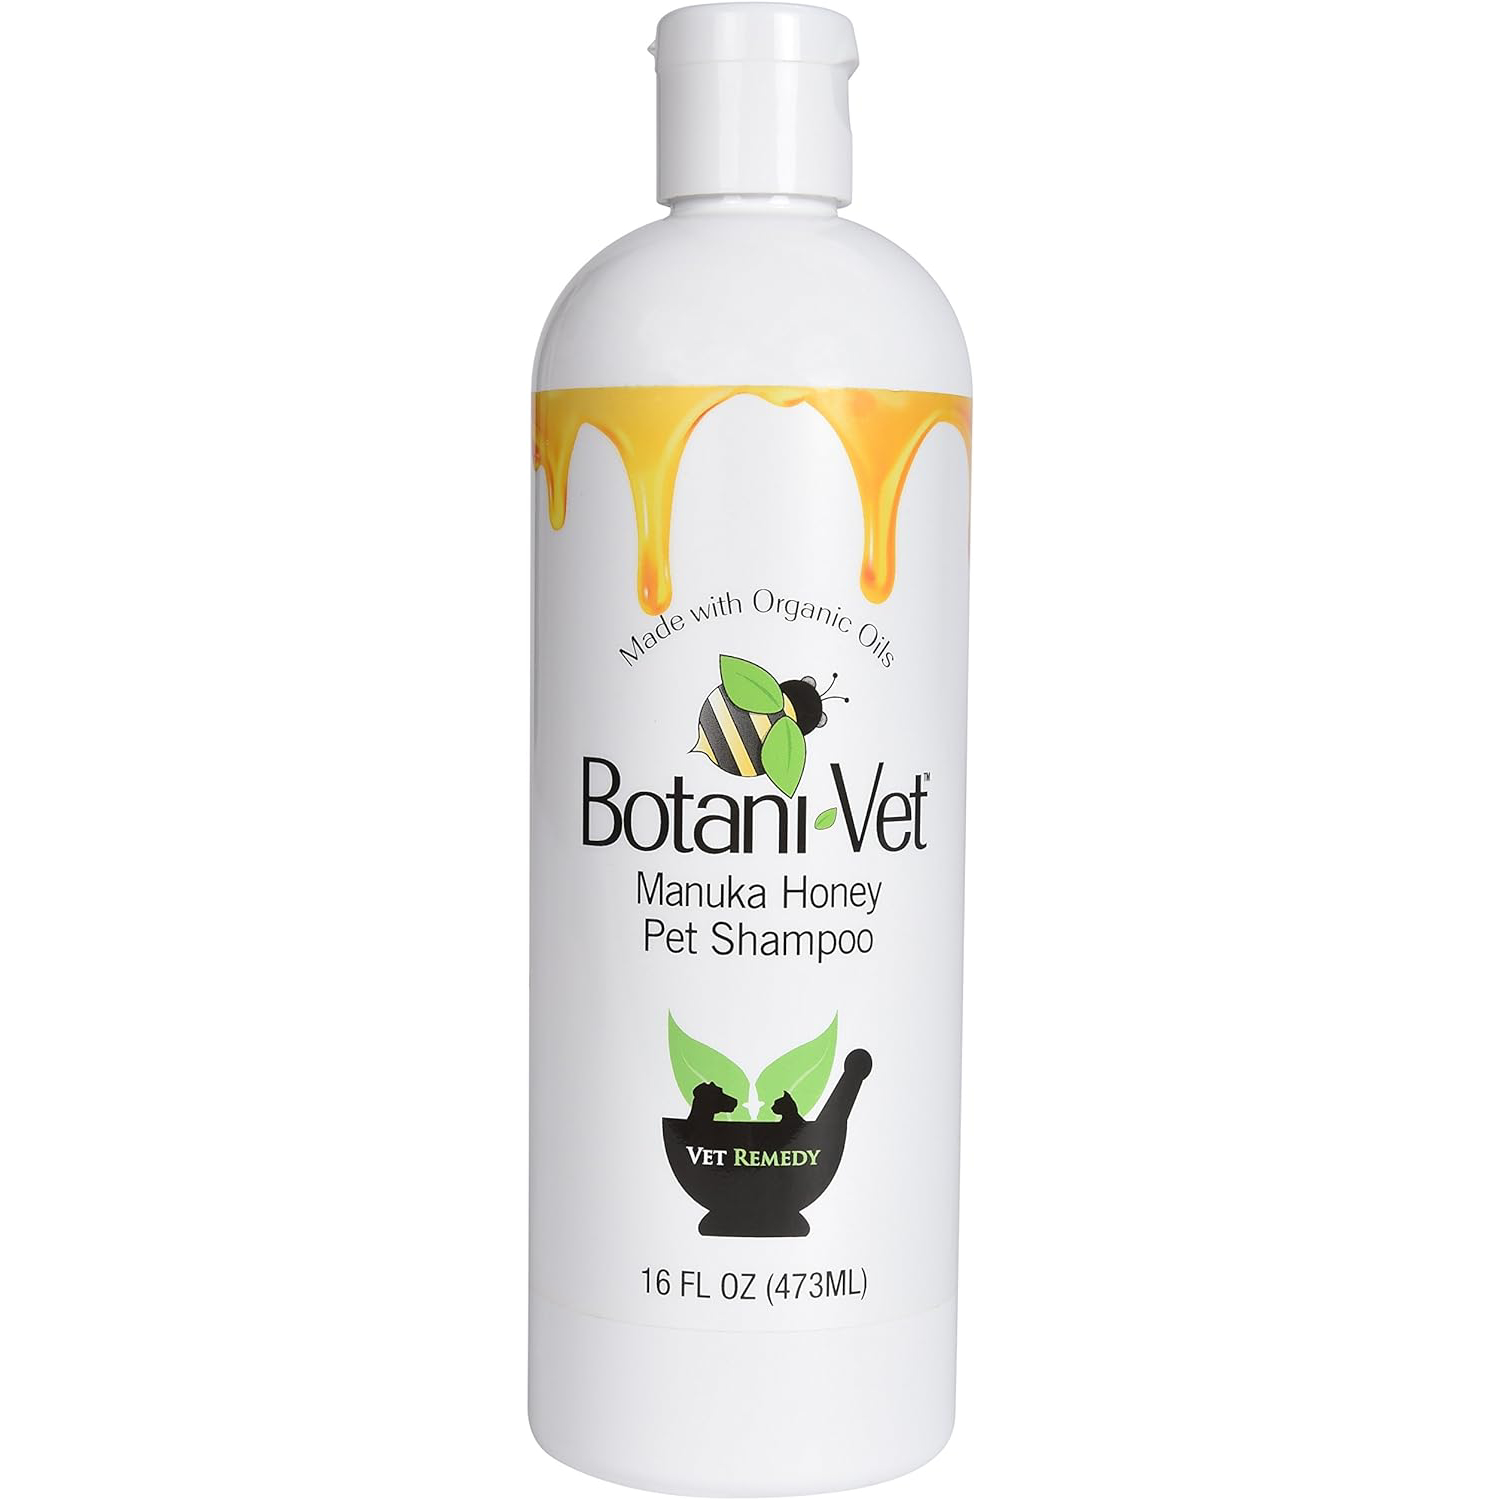 BotaniVet Manuka Honey Pet Shampoo new (1)